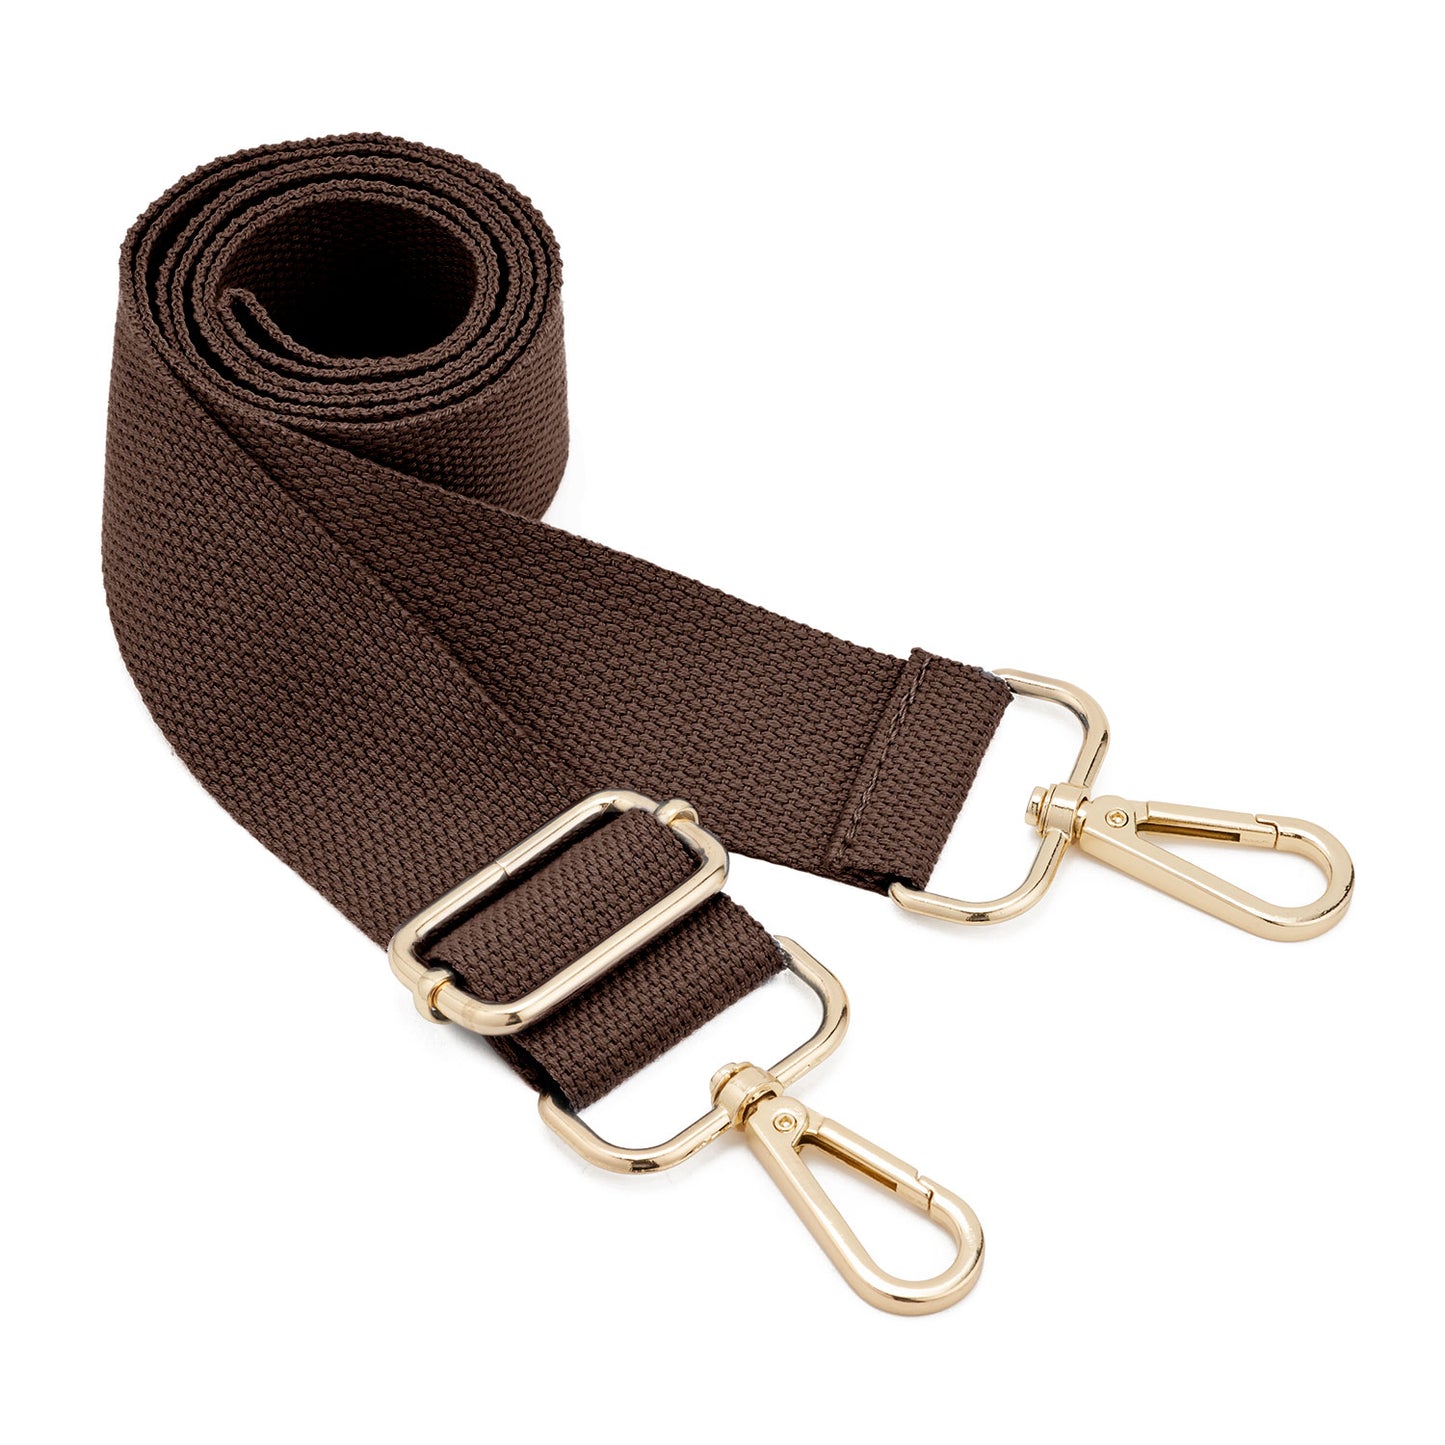 Adjustable Shoulder Straps, Bag Strap, Carrying Strap For Shoulder Bag,  Wide Shoulder Strap, Adjustable Belt For Cross Body Handbag, Purse